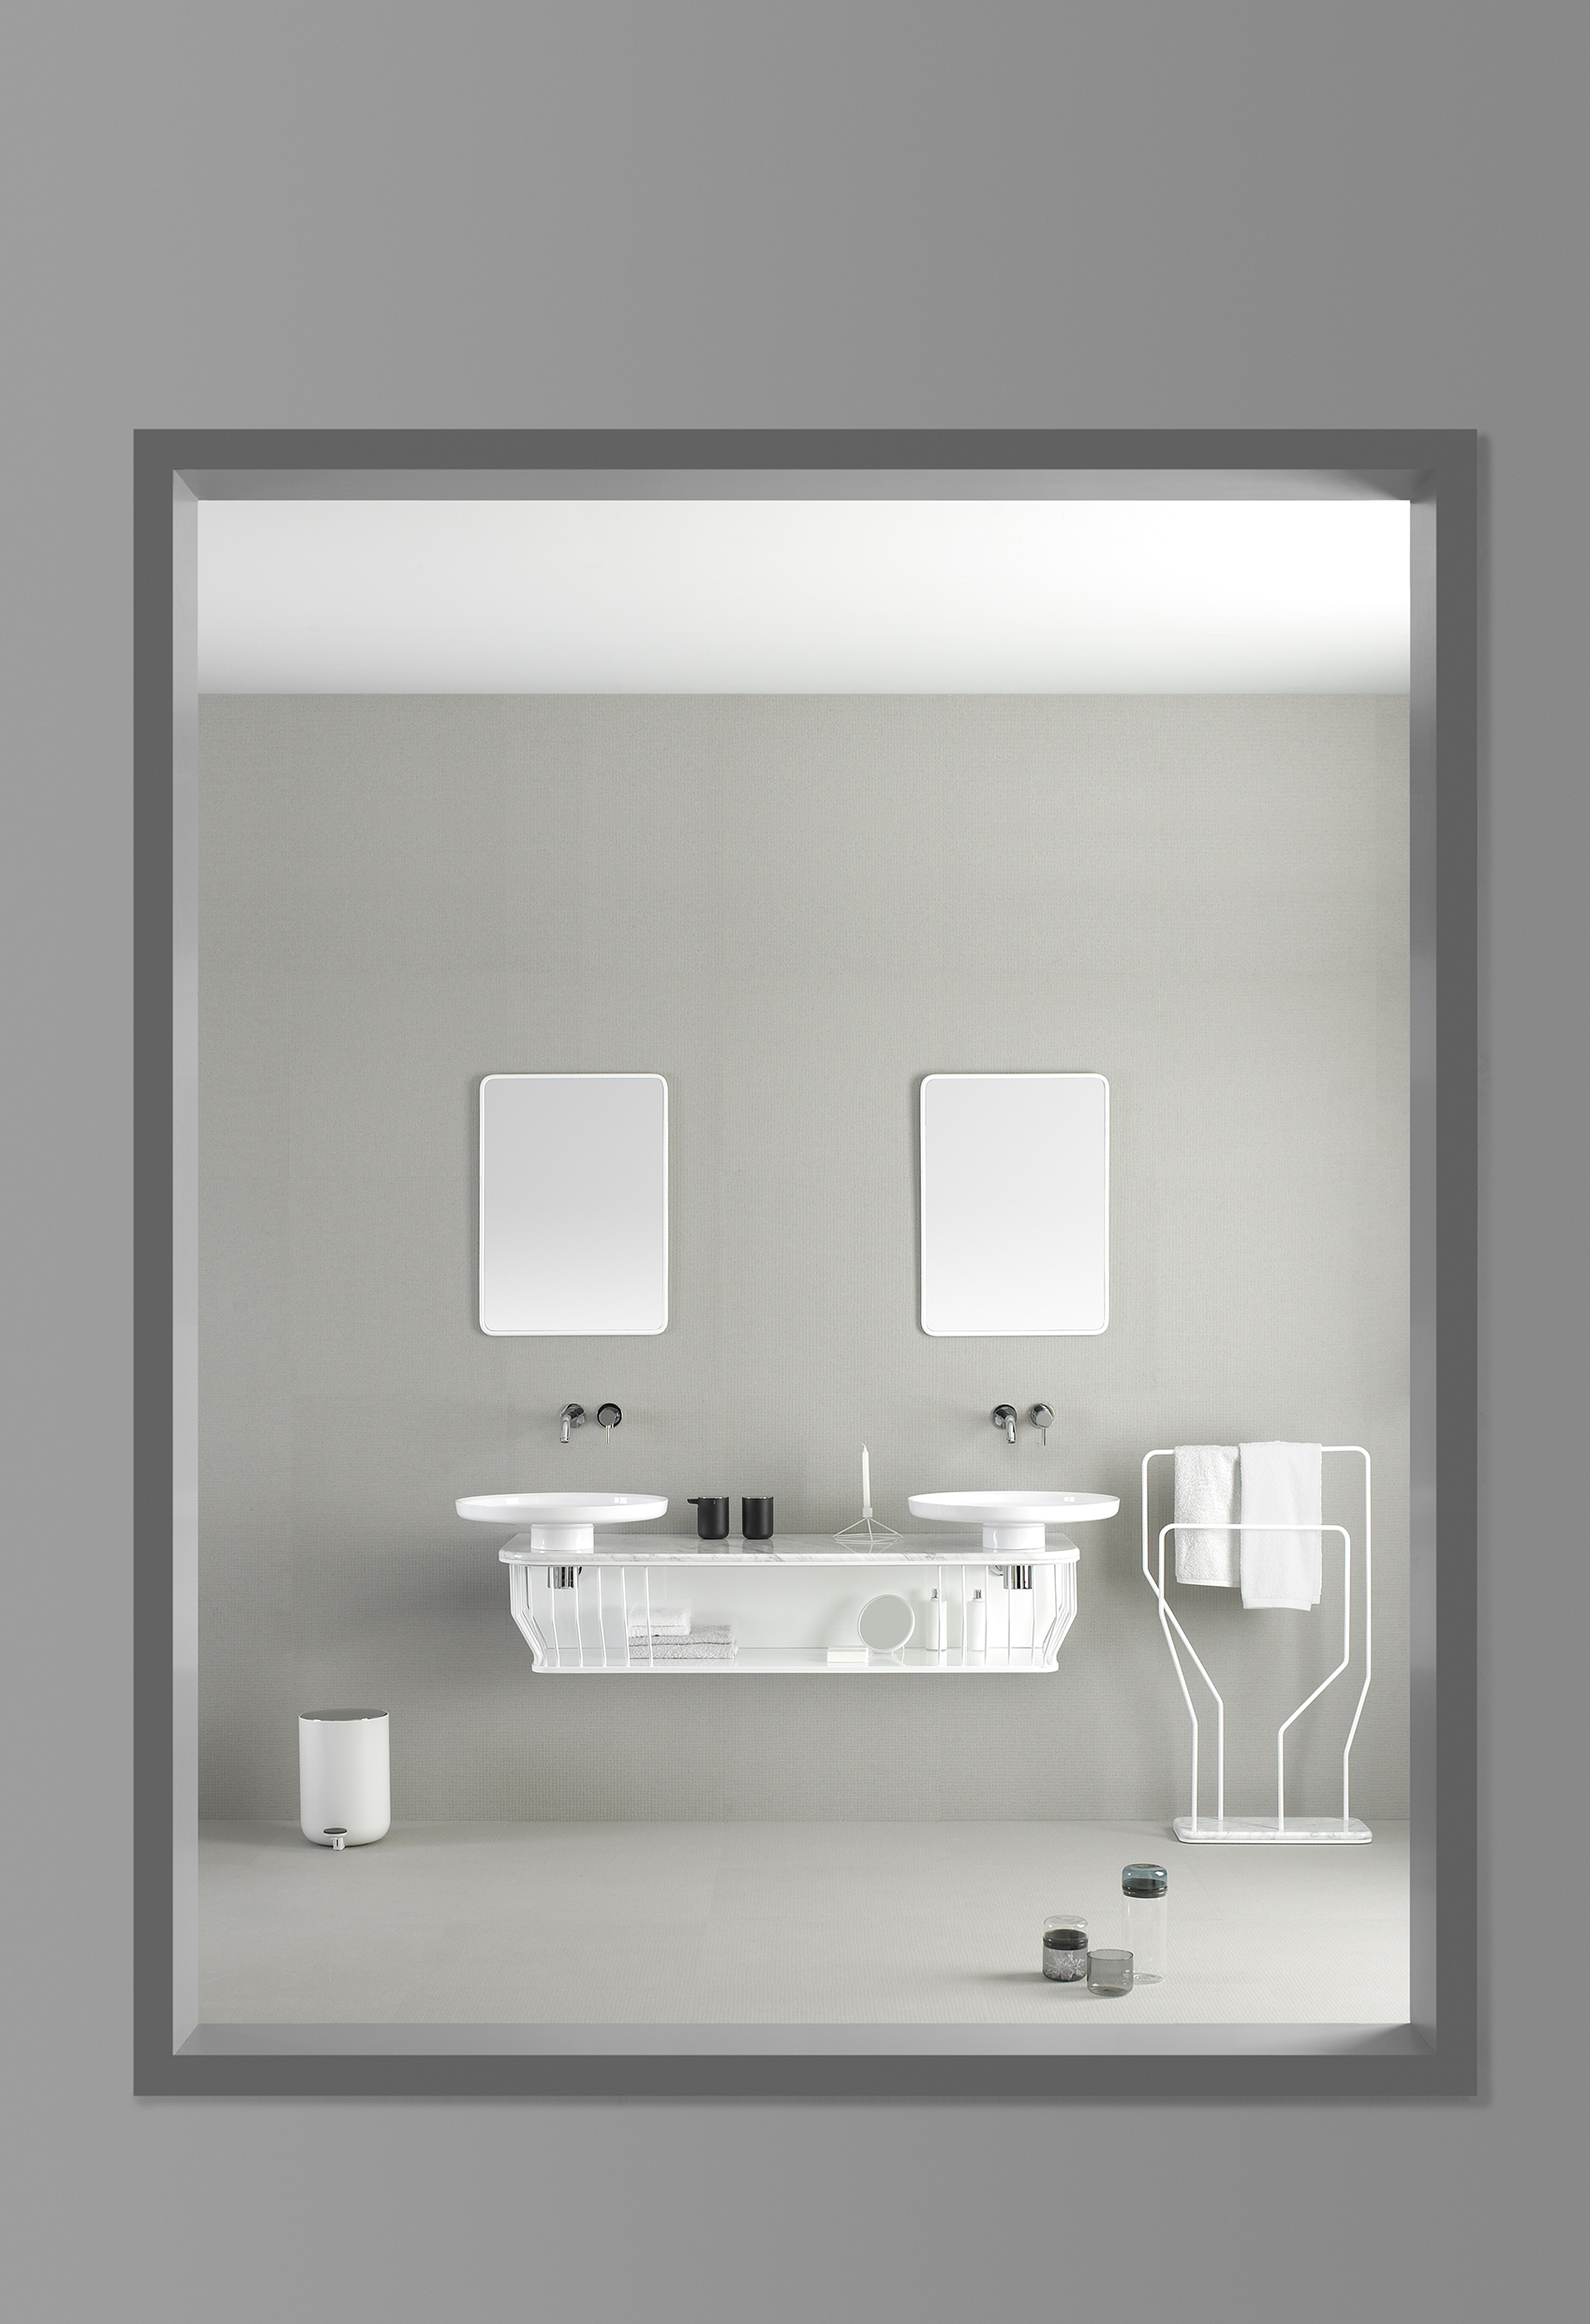 與西班牙衛浴品牌 INBANI 合作的 Bowl 系列，跳脫浴室用品的刻板傳統形象。